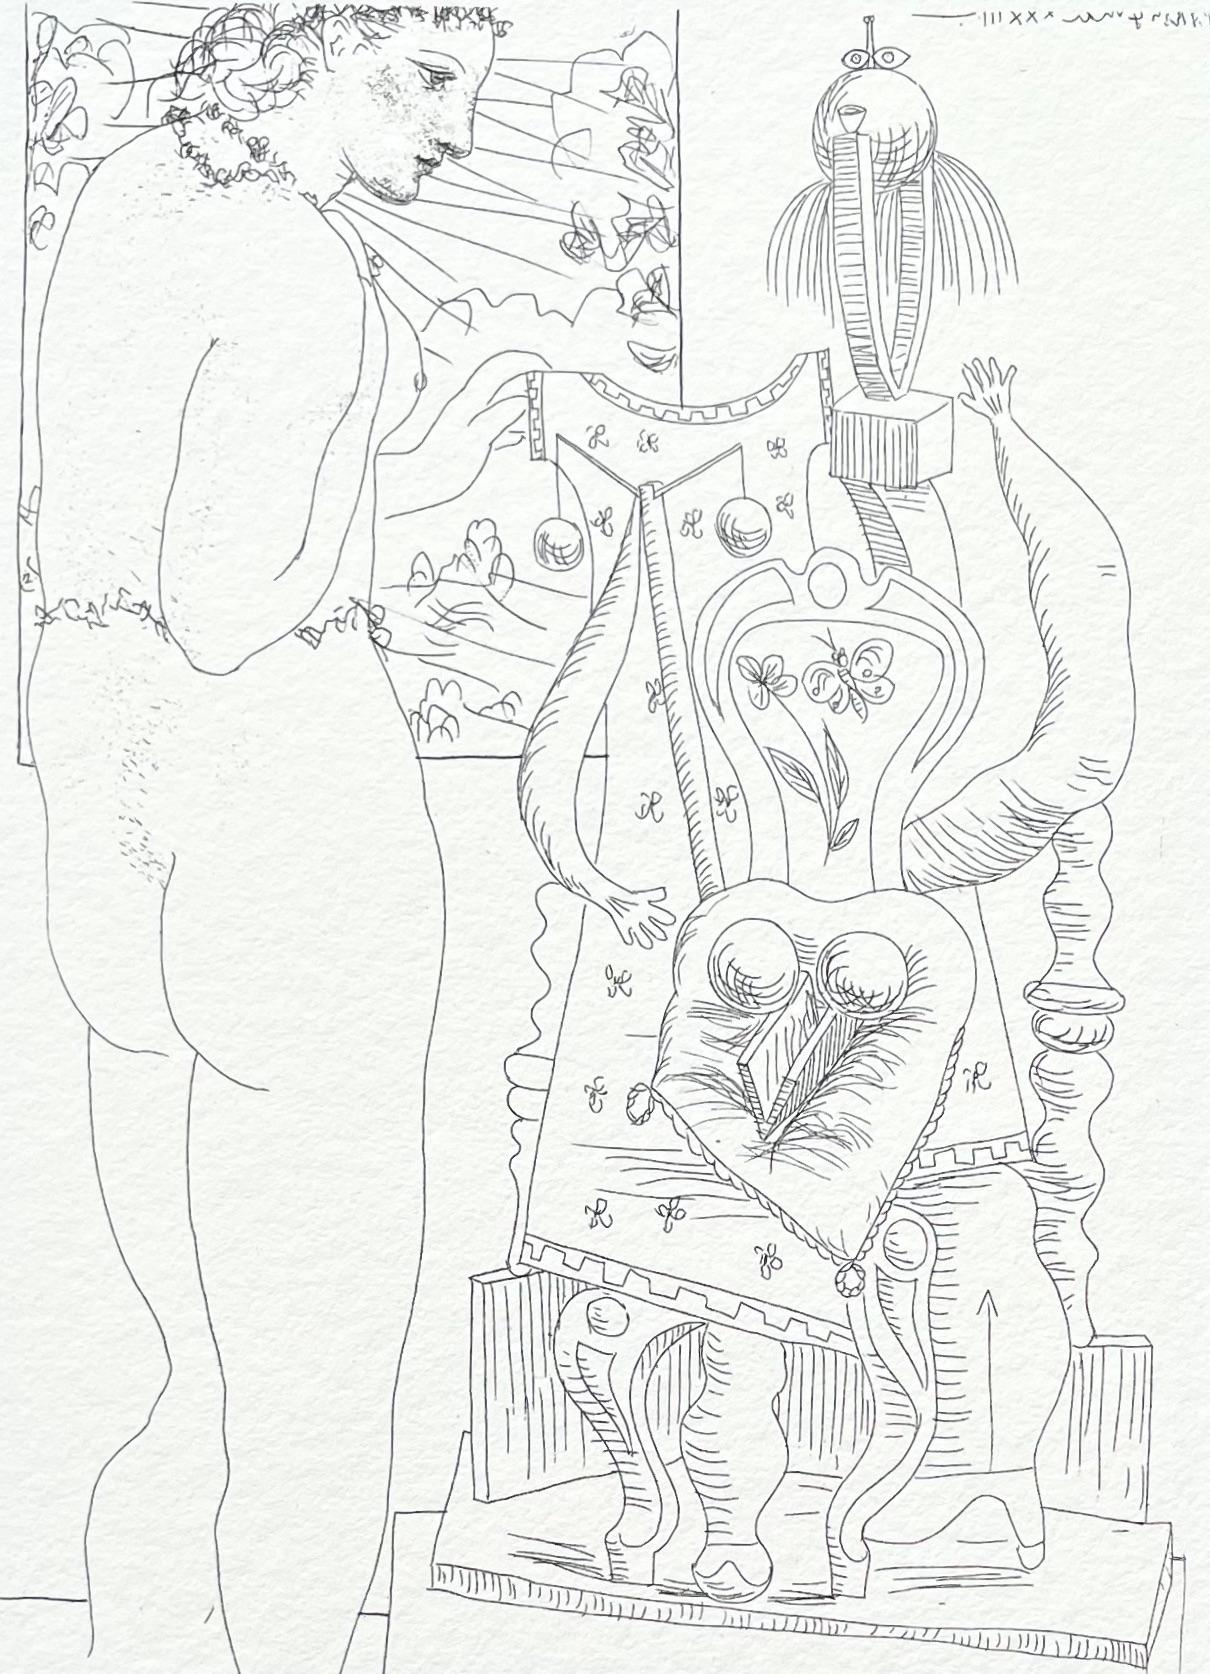 Pablo Picasso Nude Print – Picasso, Marie-Thérèse considérant son Effigie surréaliste sculptée (nach)